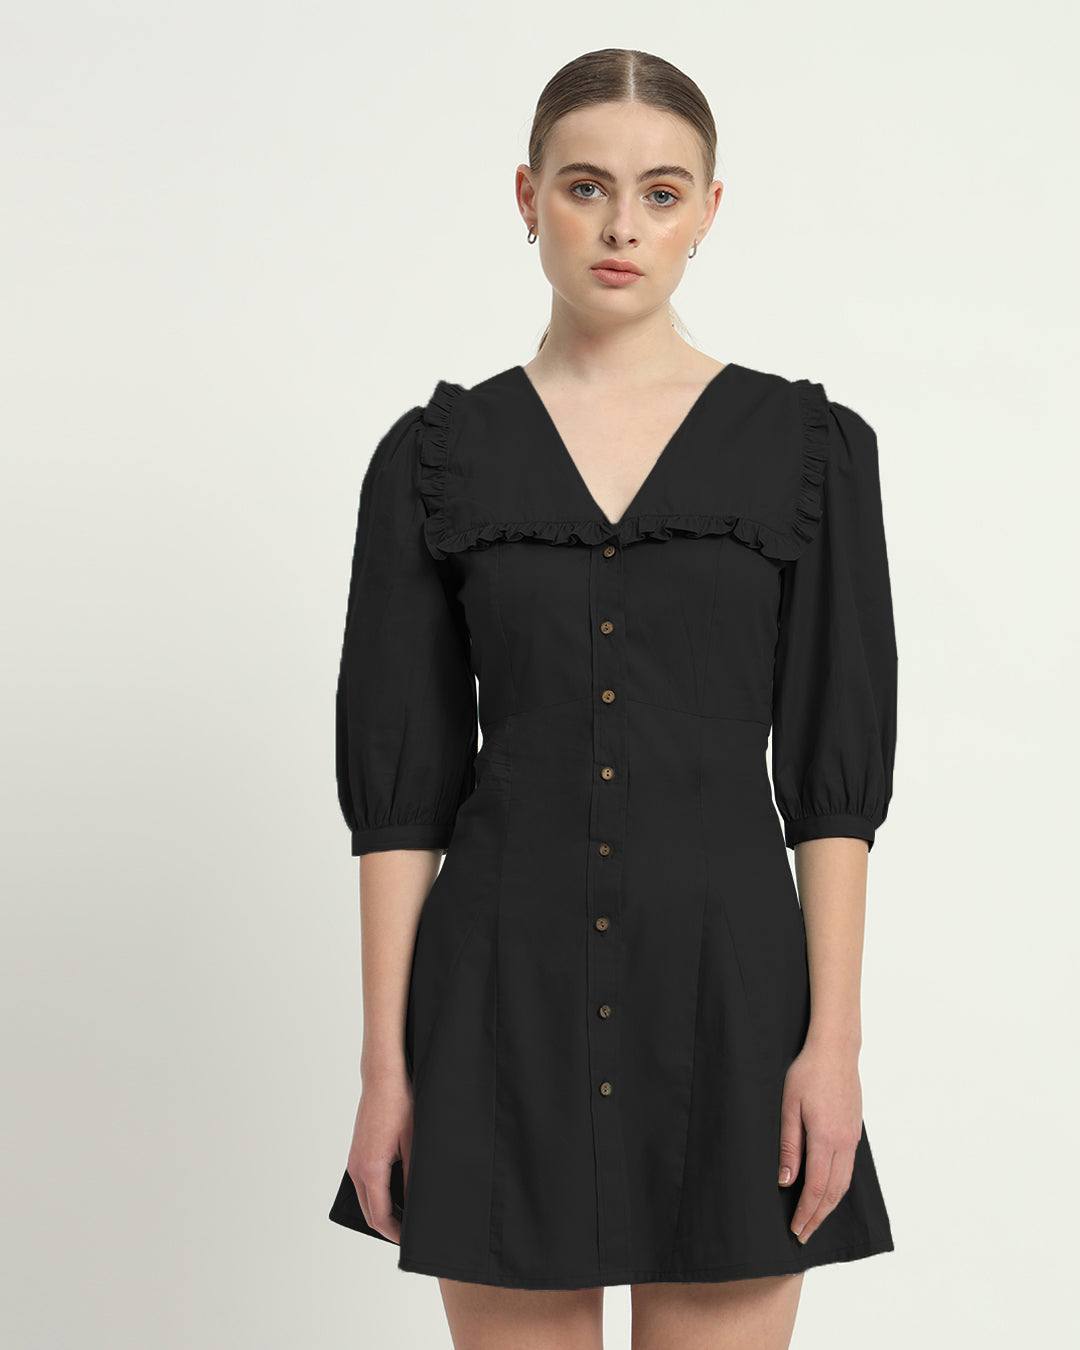 The Isabela Noir Cotton Dress